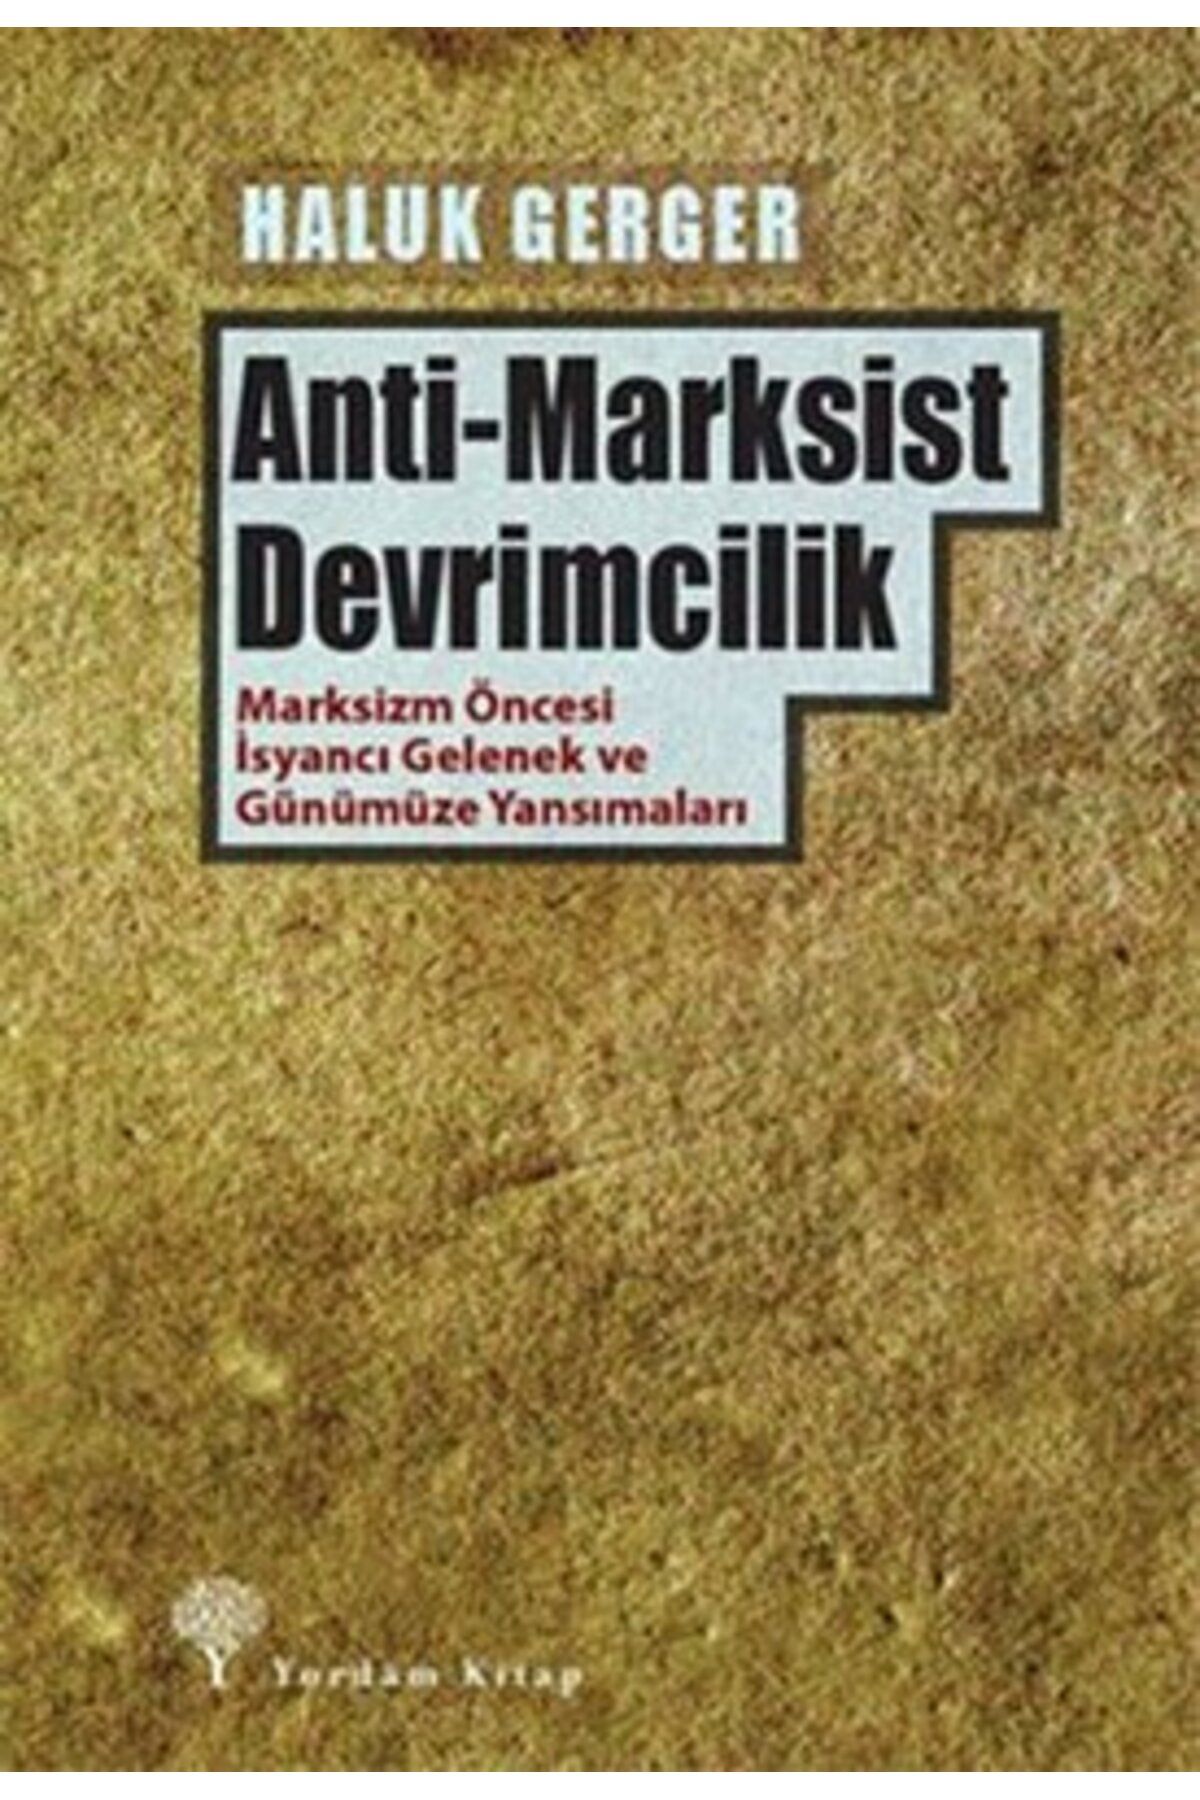 Yordam Kitap Anti - Marksist Devrimcilik